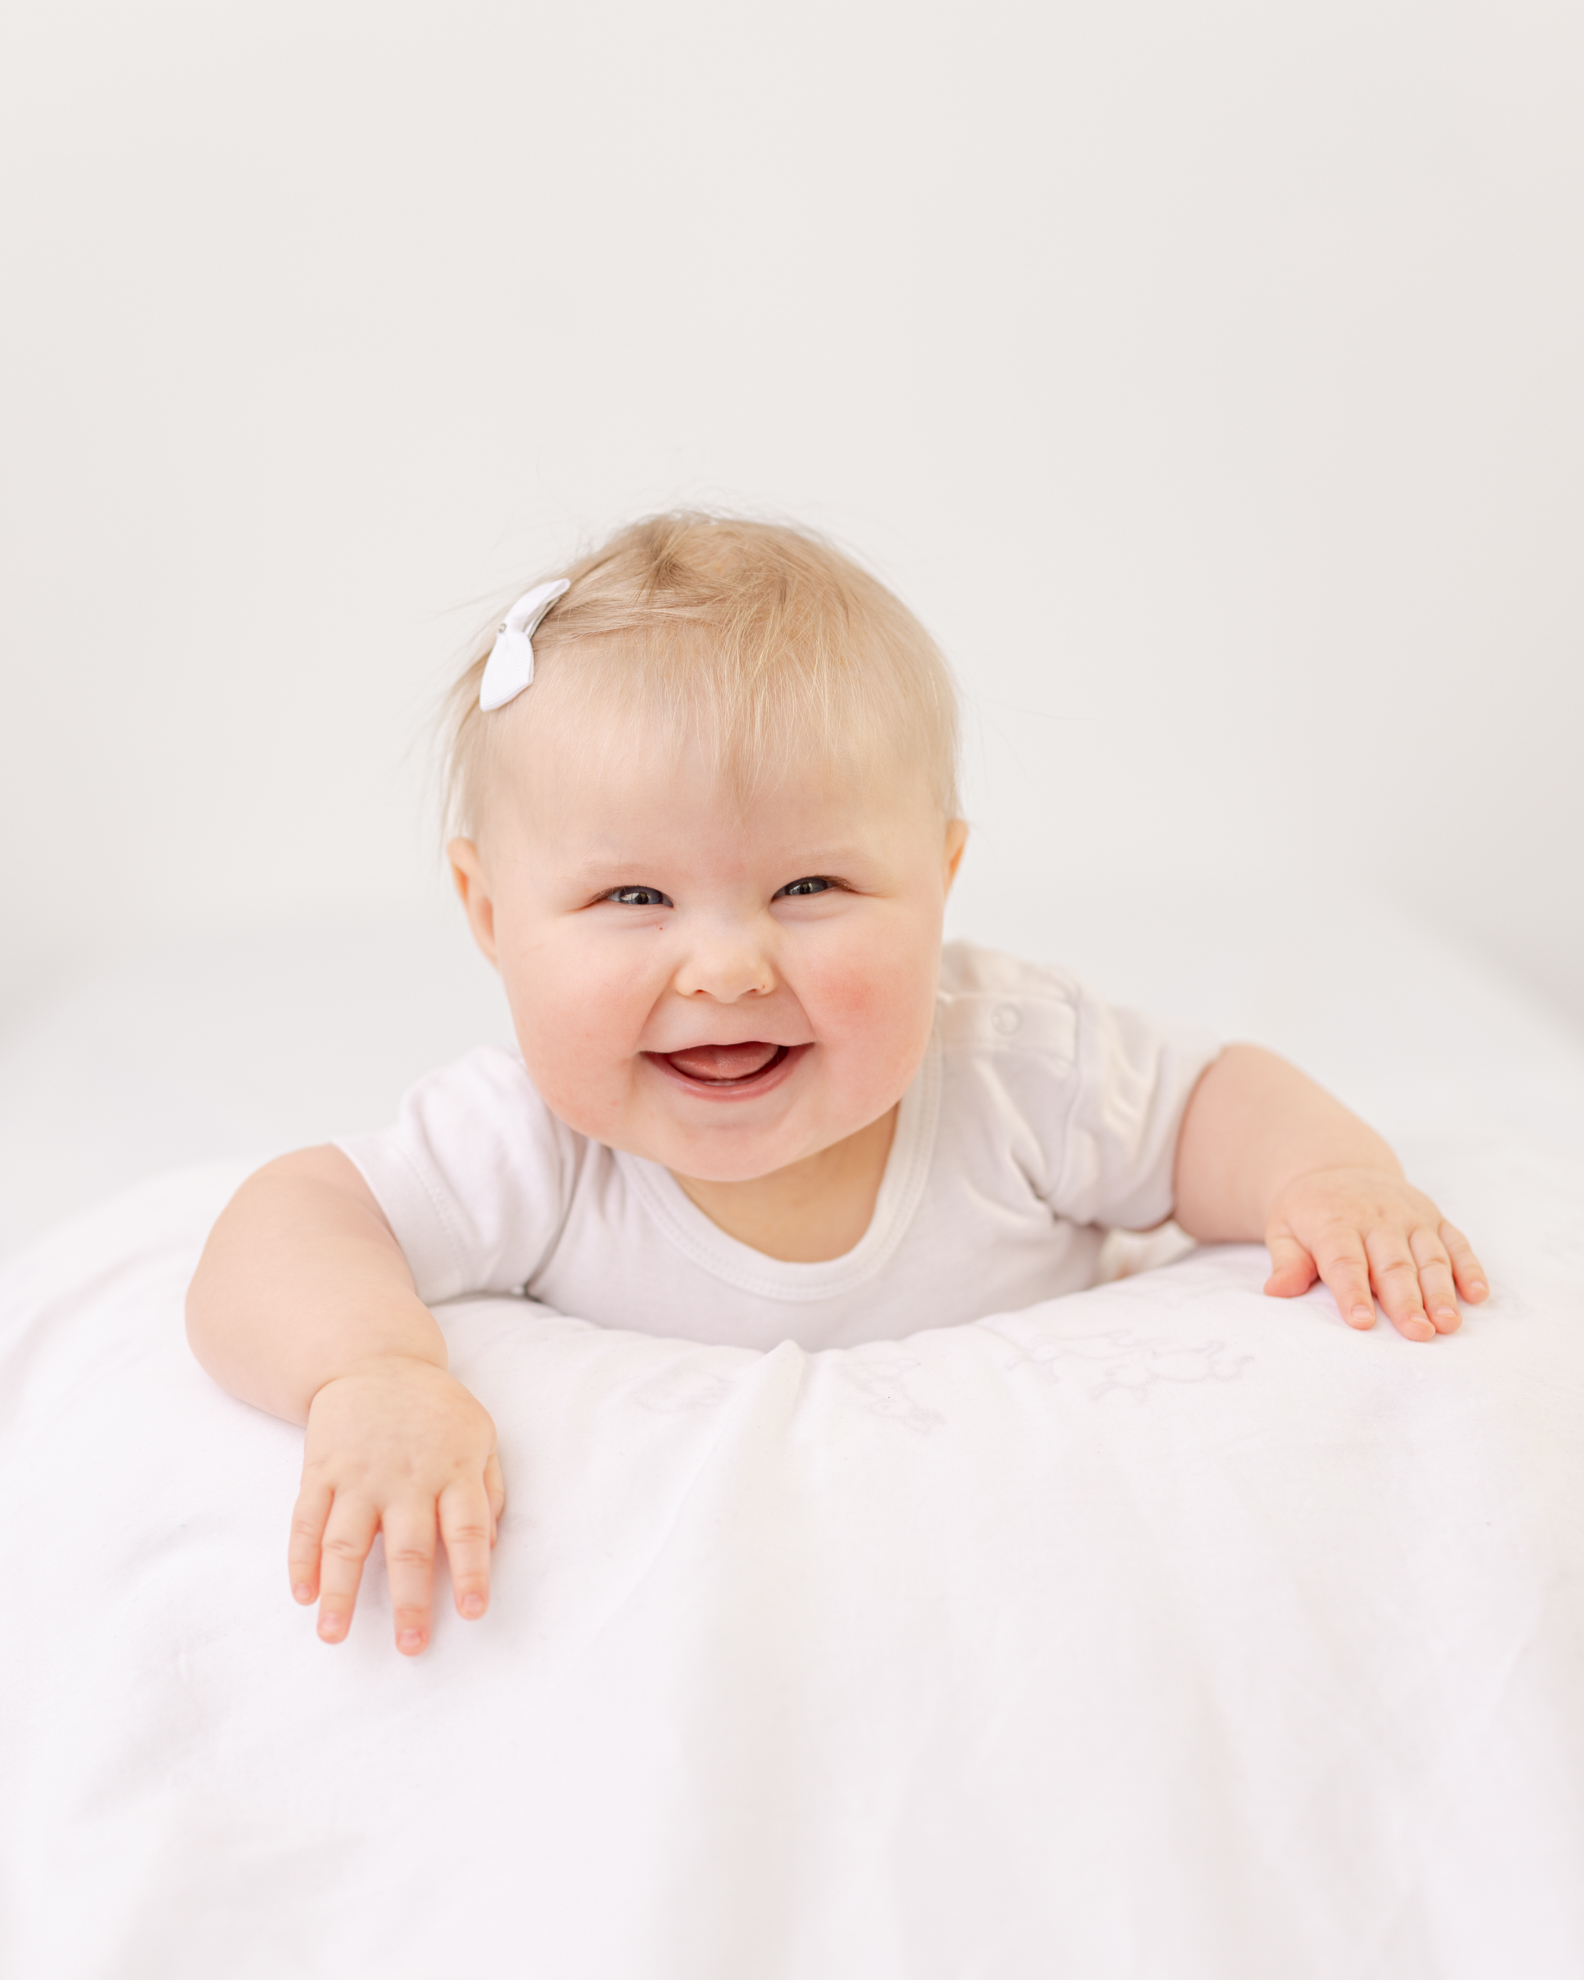 Portrett av en baby som ligger på magen og smiler mot kamera